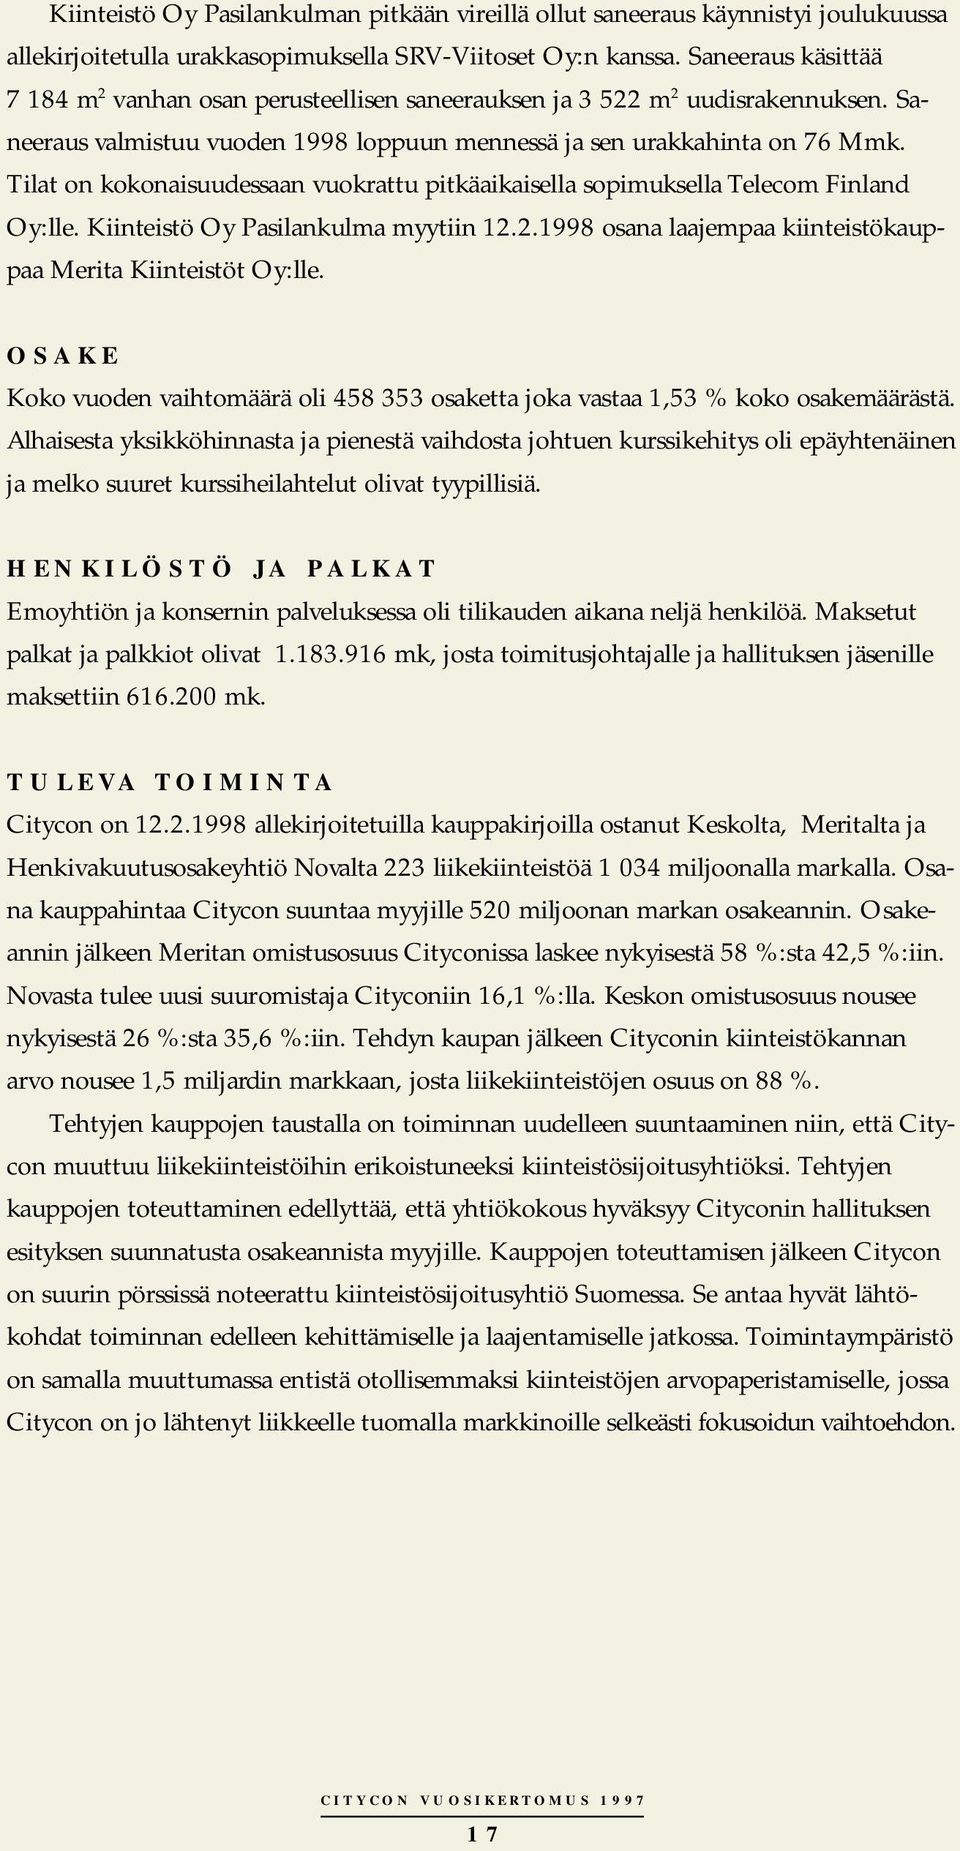 Tilat on kokonaisuudessaan vuokrattu pitkäaikaisella sopimuksella Telecom Finland Oy:lle. Kiinteistö Oy Pasilankulma myytiin 12.2.1998 osana laajempaa kiinteistökauppaa Merita Kiinteistöt Oy:lle.